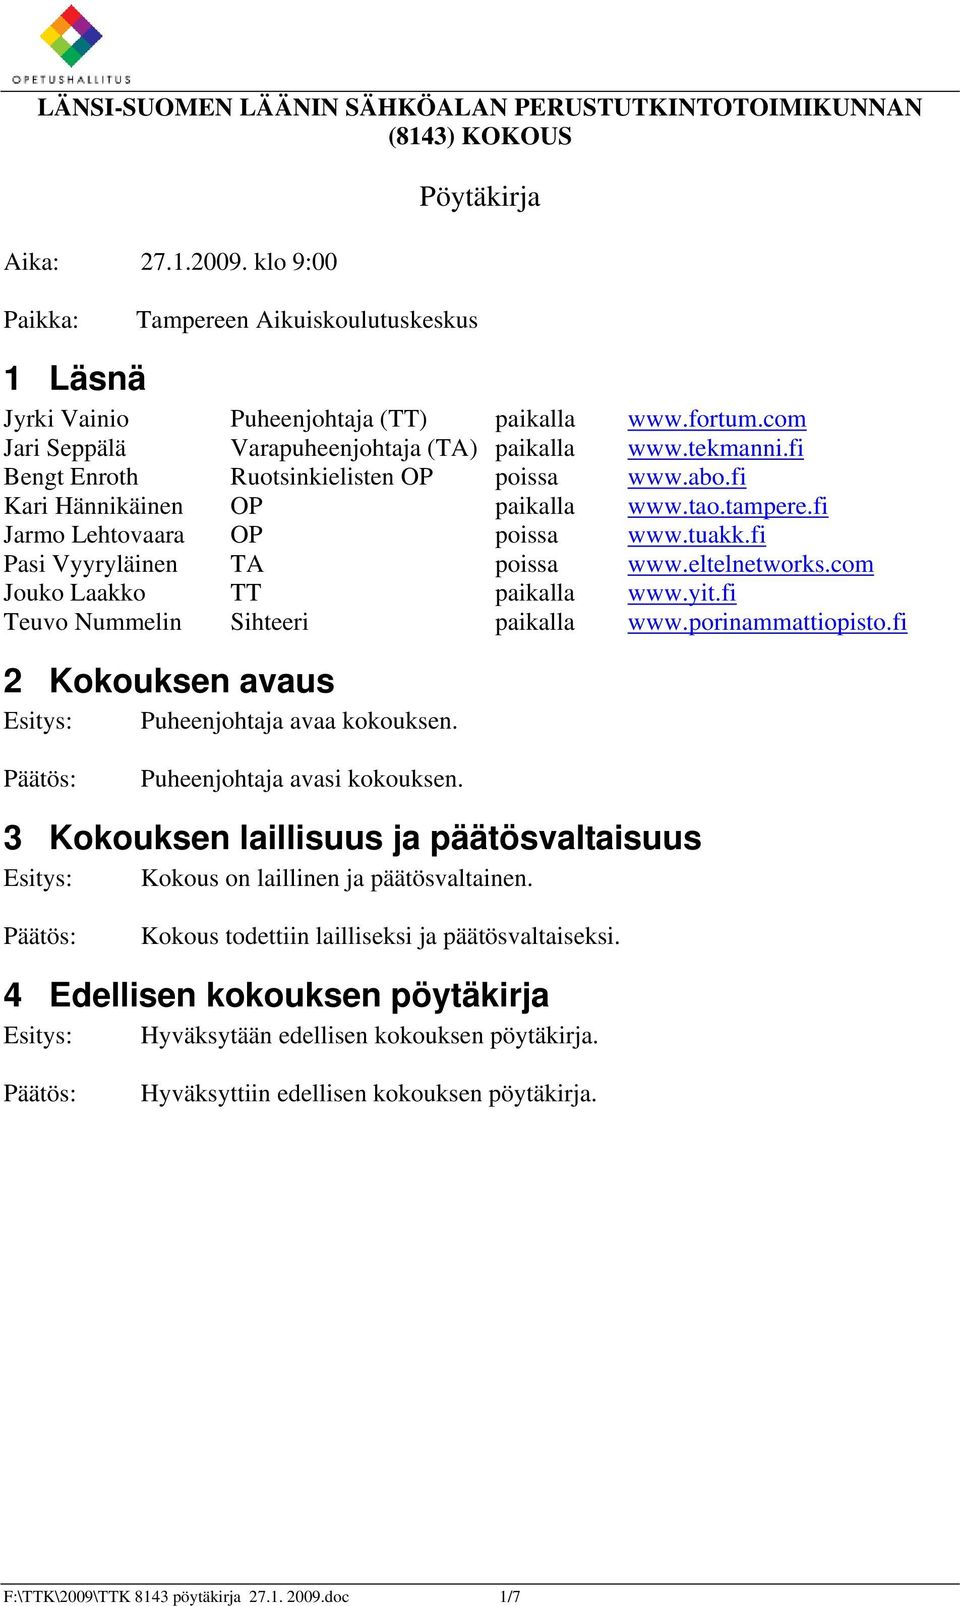 fi Jarmo Lehtovaara OP poissa www.tuakk.fi Pasi Vyyryläinen TA poissa www.eltelnetworks.com Jouko Laakko TT paikalla www.yit.fi Teuvo Nummelin Sihteeri paikalla www.porinammattiopisto.